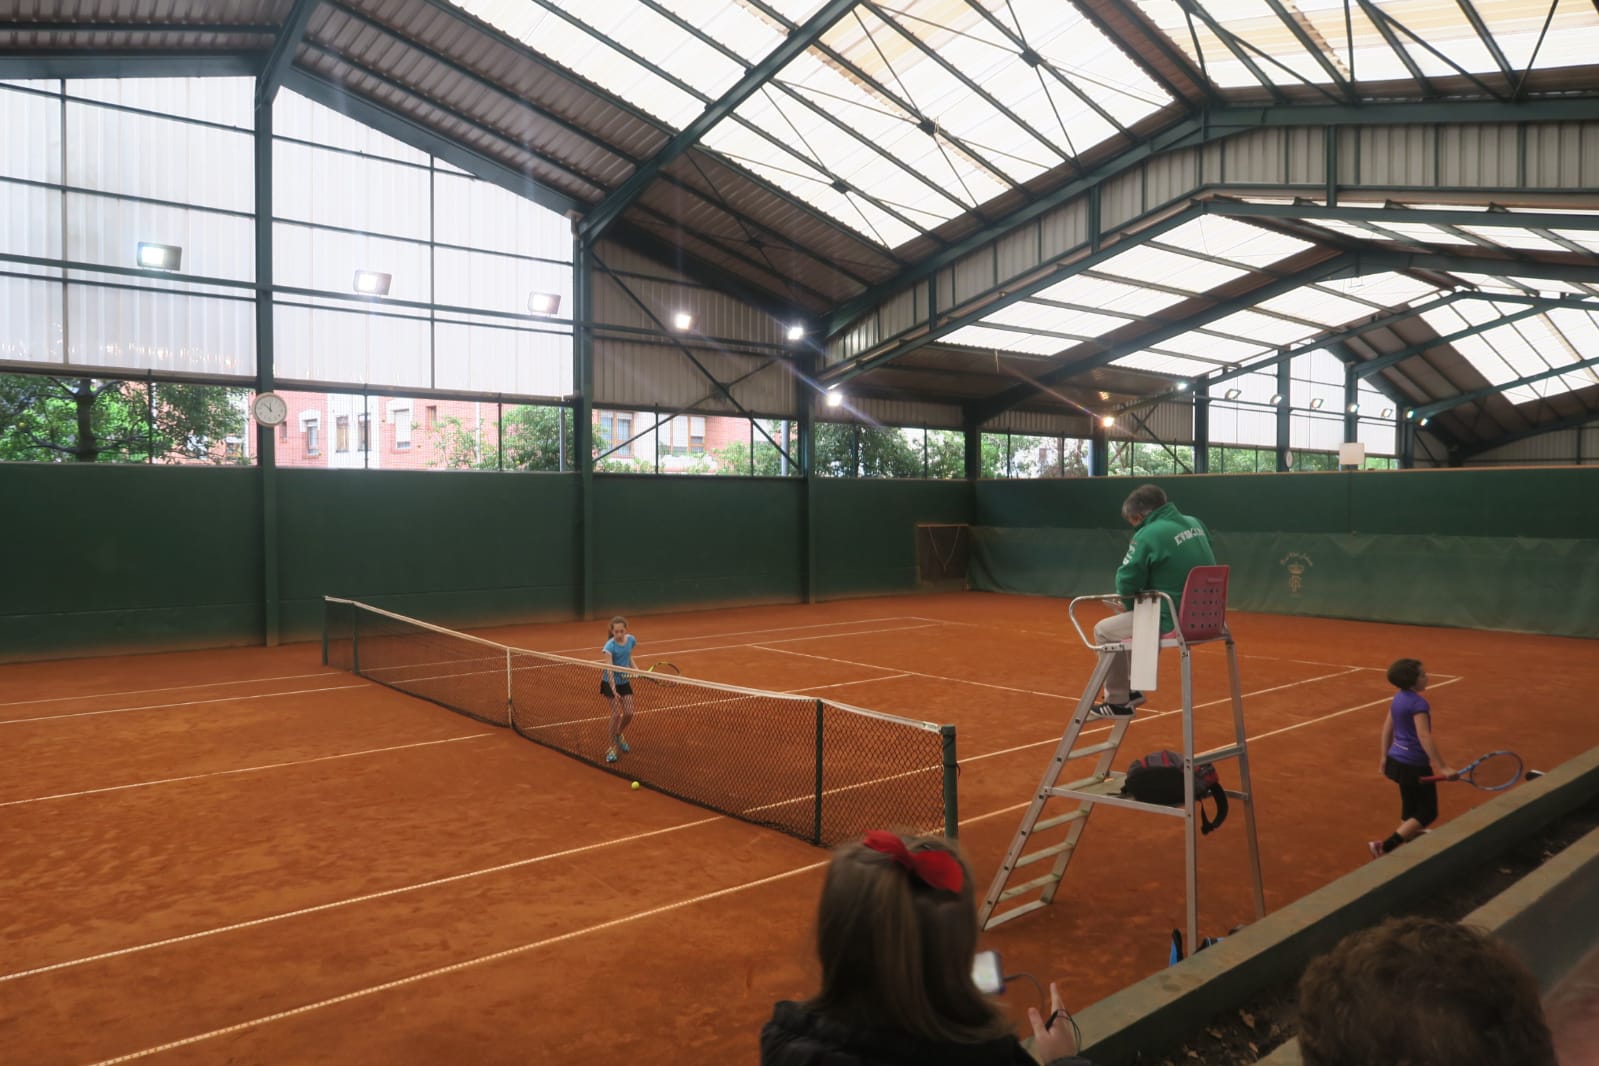  Campeonato de Bizkaia sub10 y Alevín, foto de tenis 4